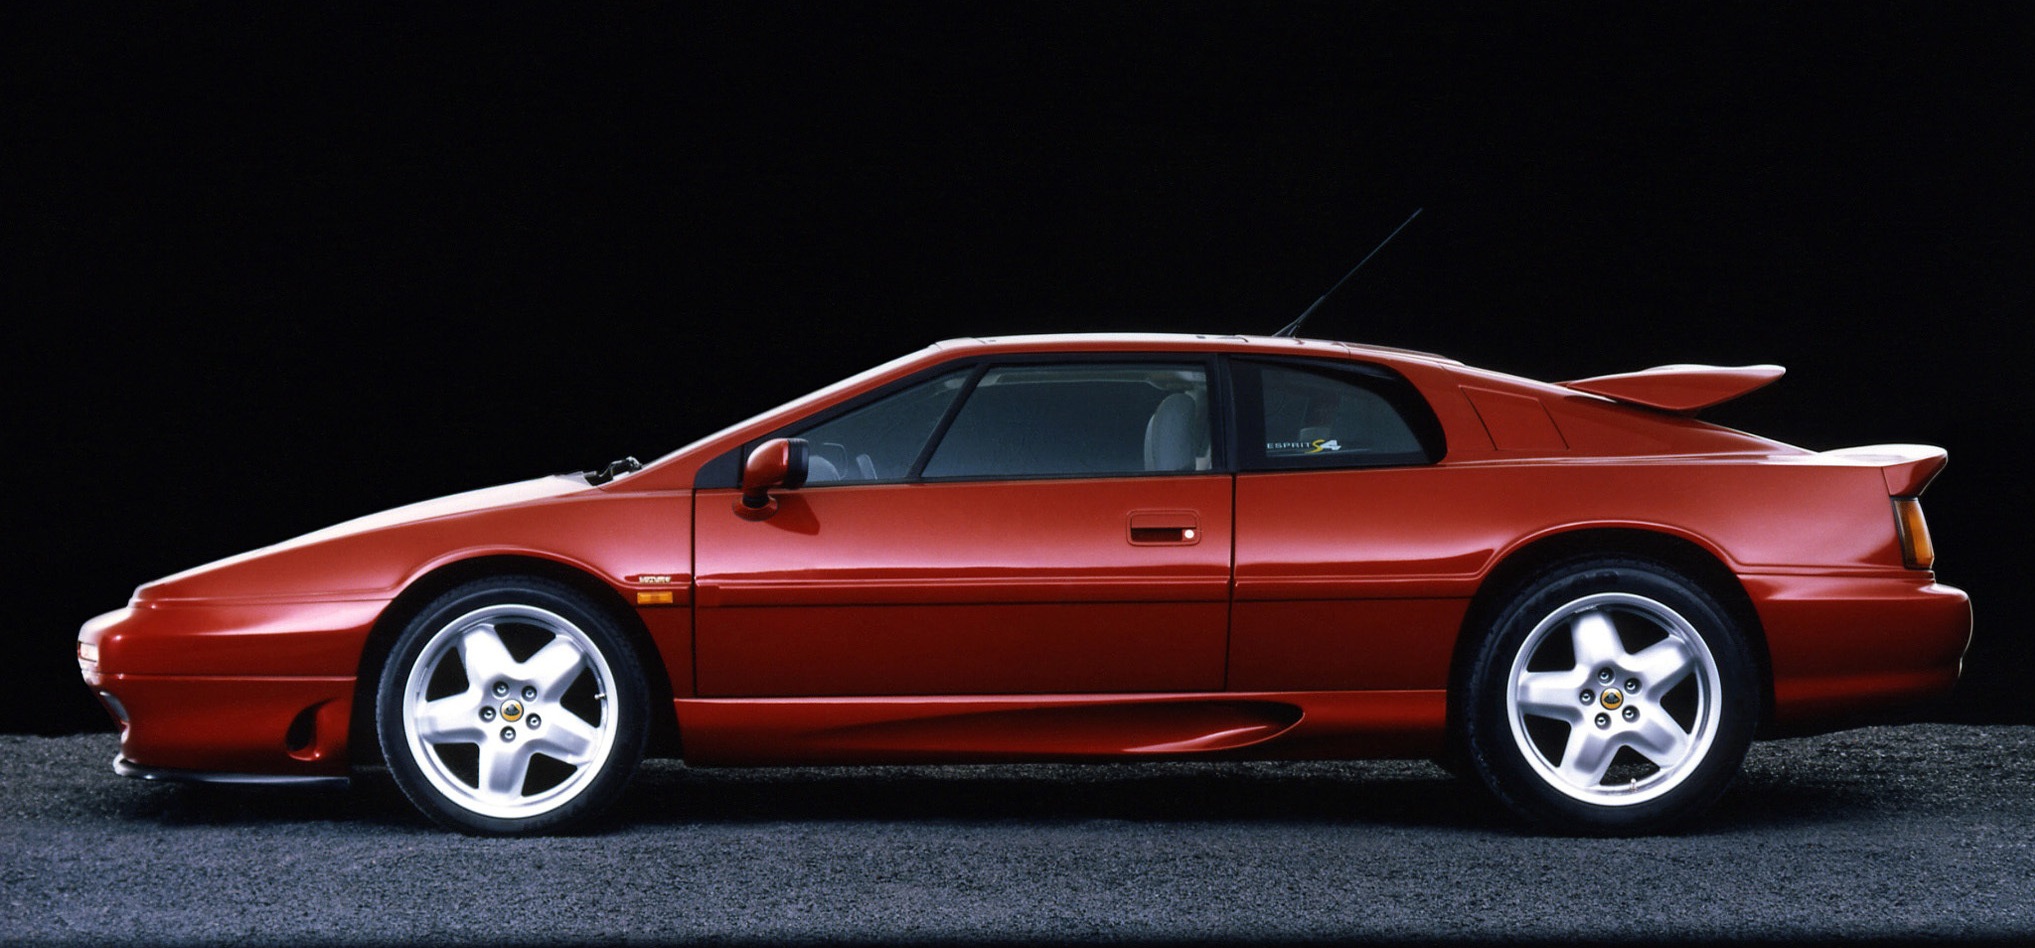 1993 Lotus Esprit S4 Turbo